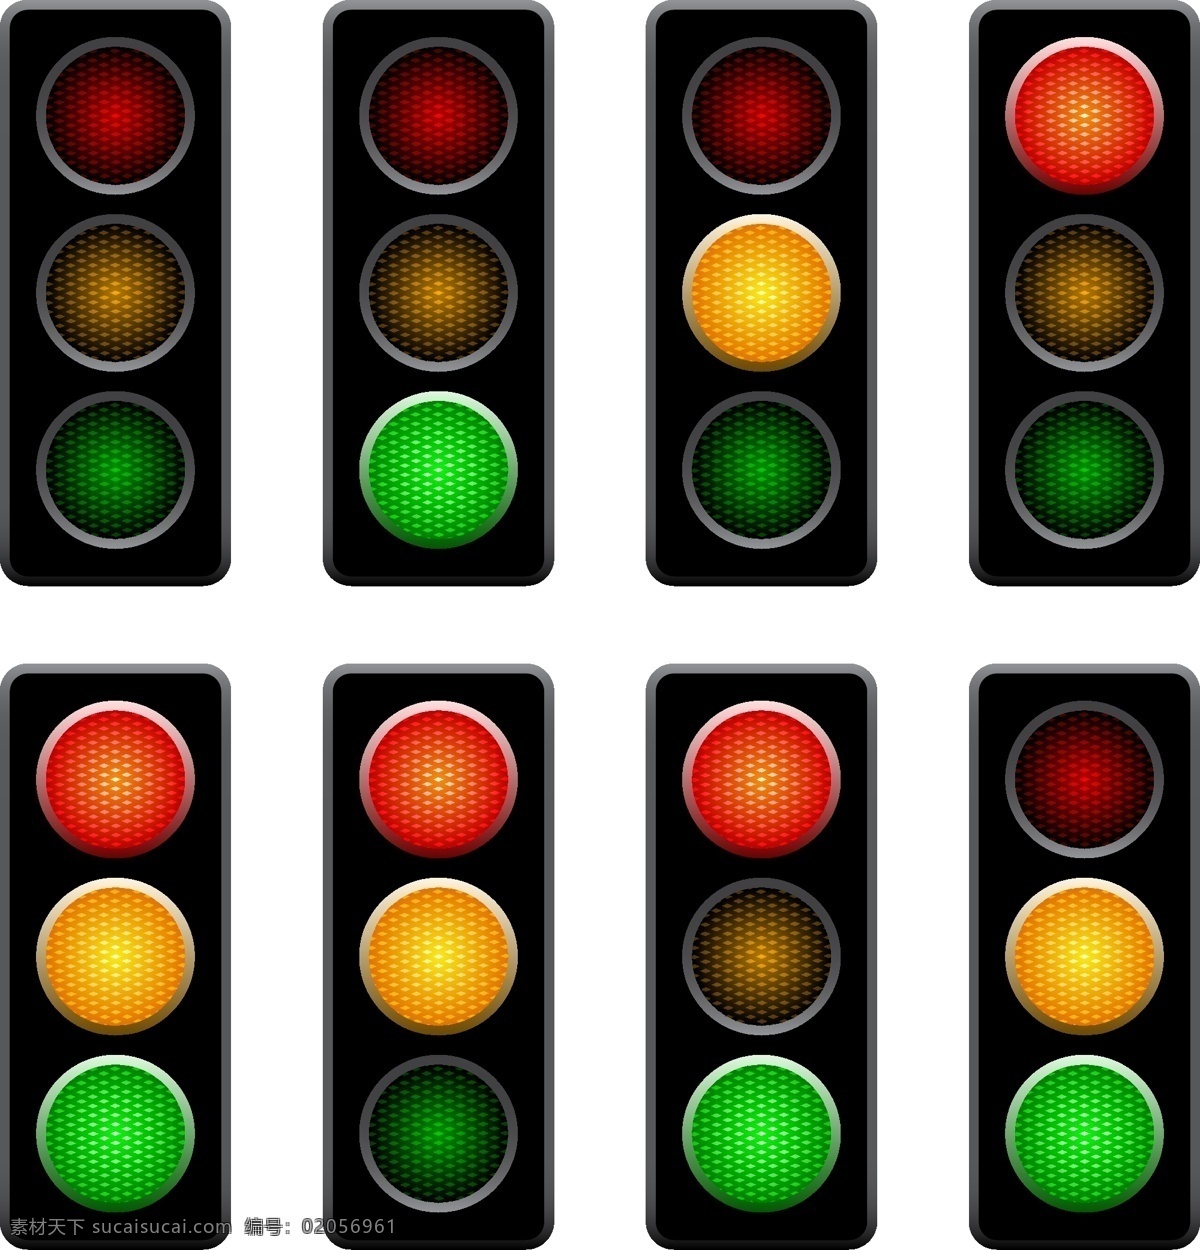 世界 交通安全 日 交通信号灯 交通灯 矢量 红绿灯 矢量素材 交通安全素材 交通设施 信号灯 红灯 绿灯 黄灯